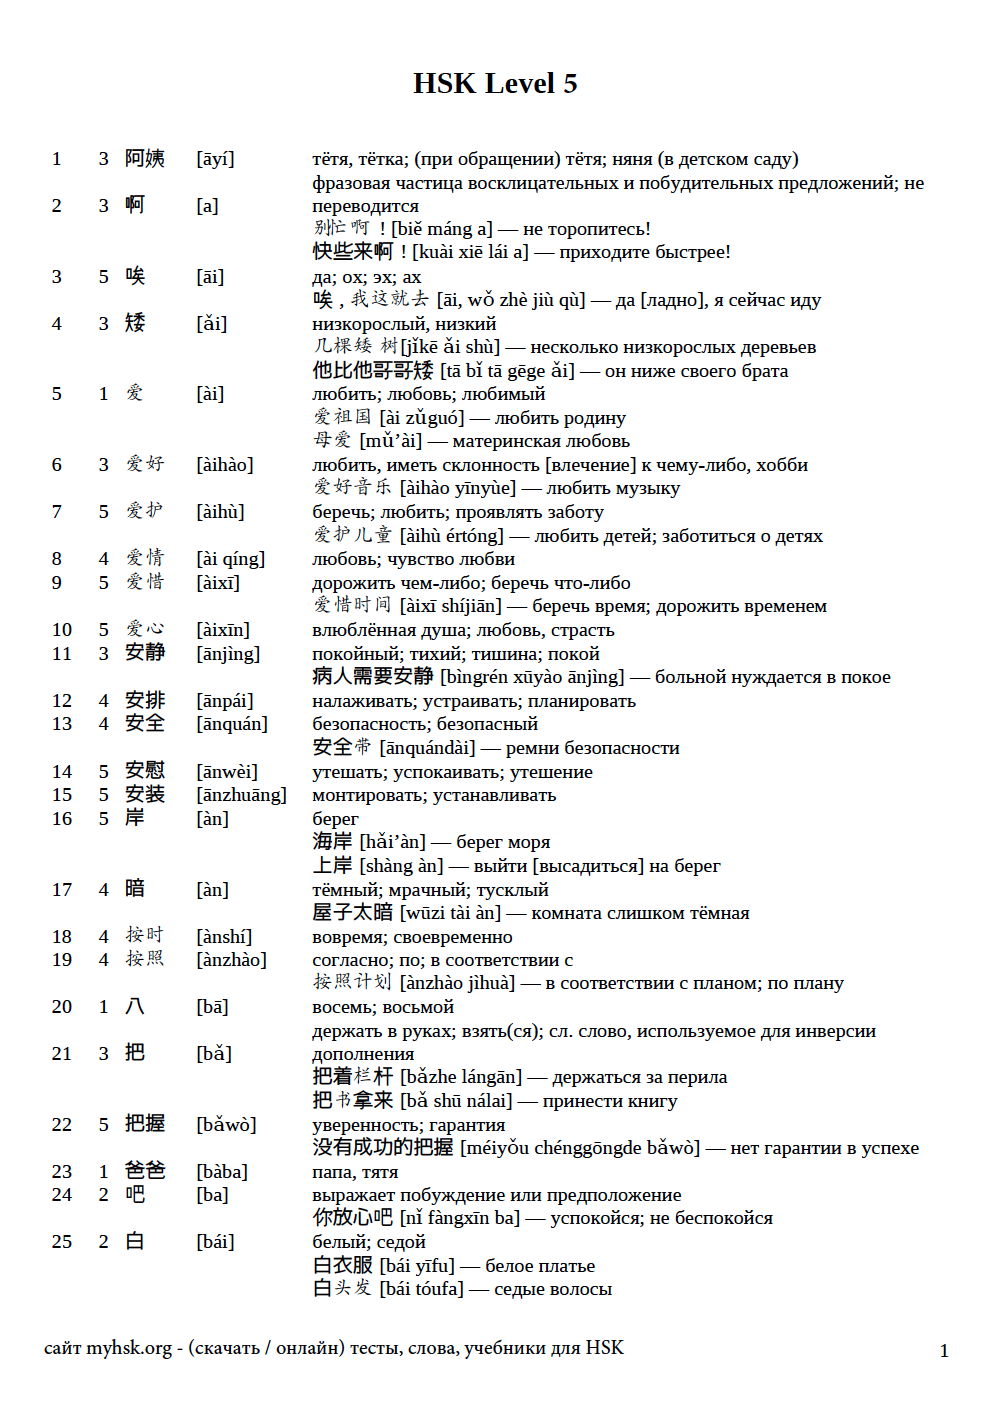 Тексты hsk 1. Таблица китайских слов для подготовки к экзамену HSK 1. 150 Китайских слов для hsk1. HSK 4 список слов. HSK 1 2022 список слов.